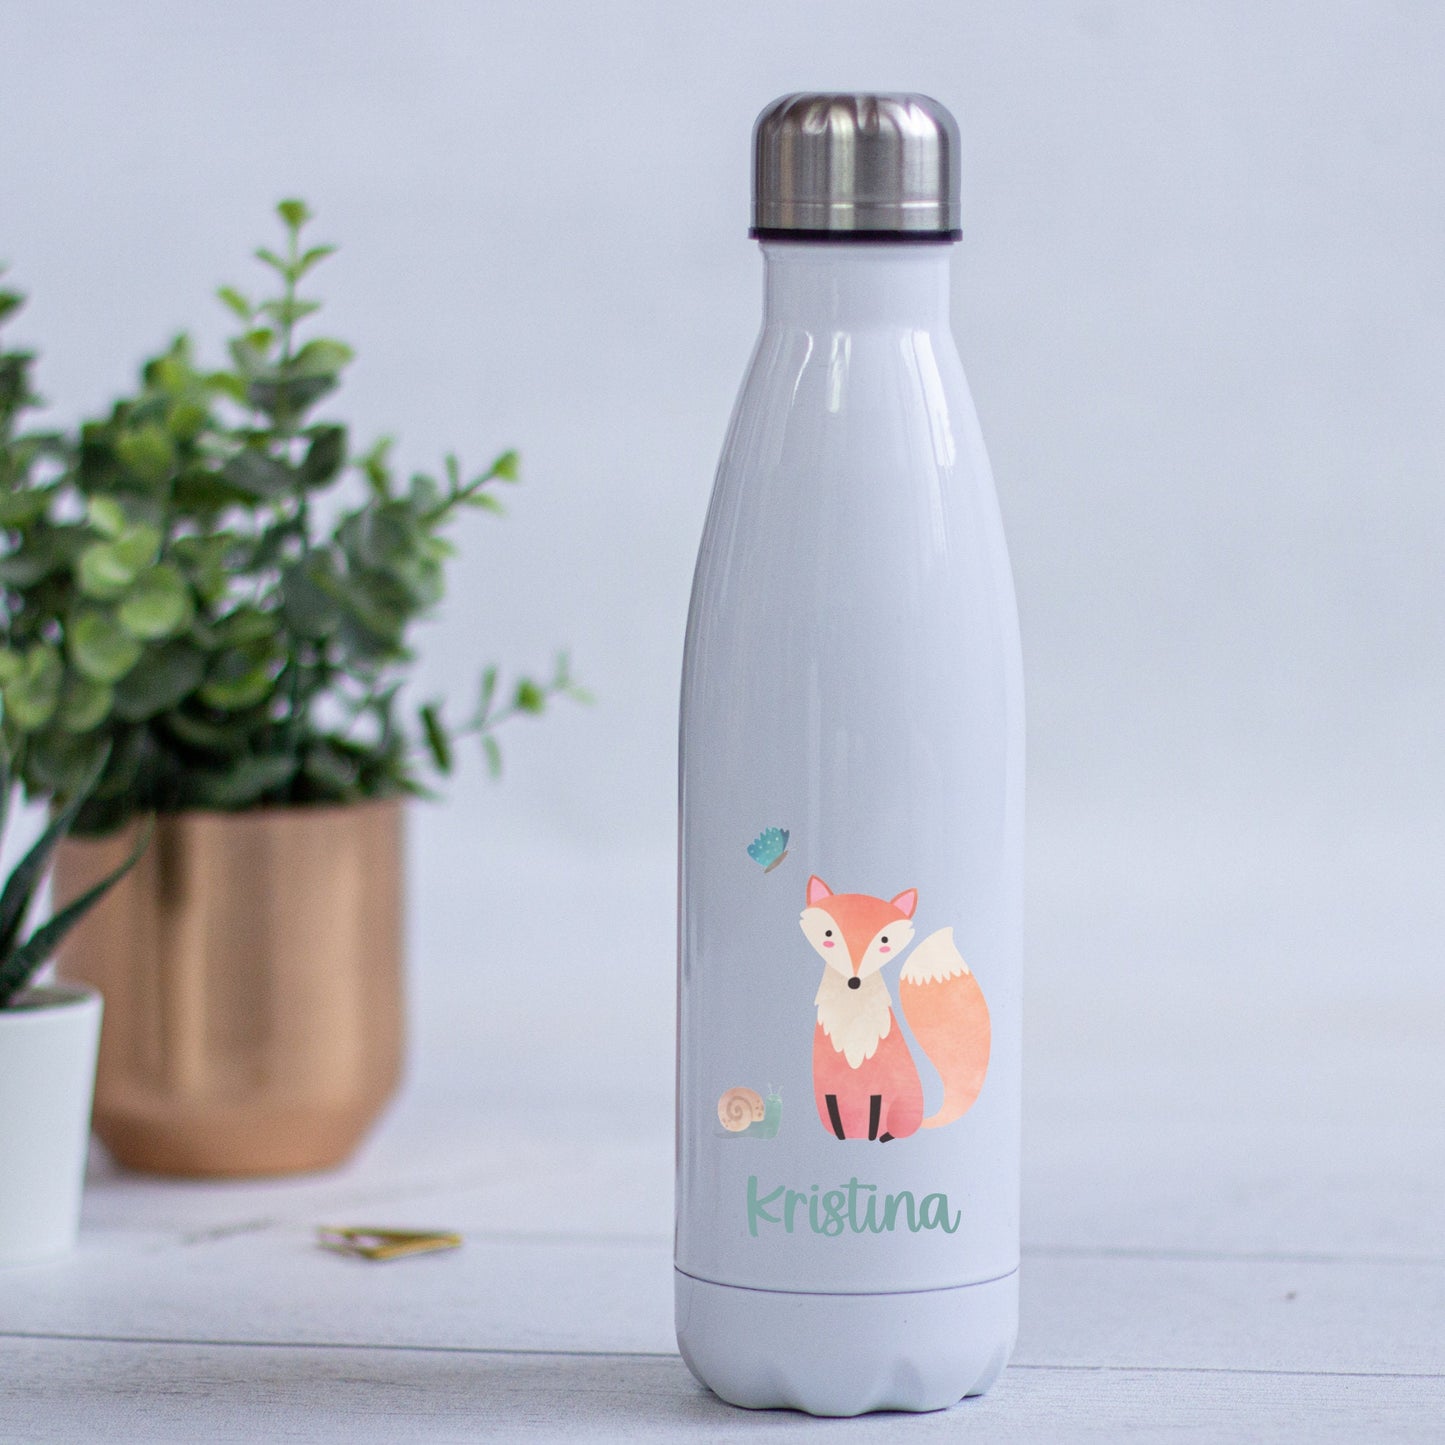 Trinkflasche Thermosflasche Edelstahl personalisiert mit Namen und Waldtieren - toll für Schule, Kindergarten und Freizeit